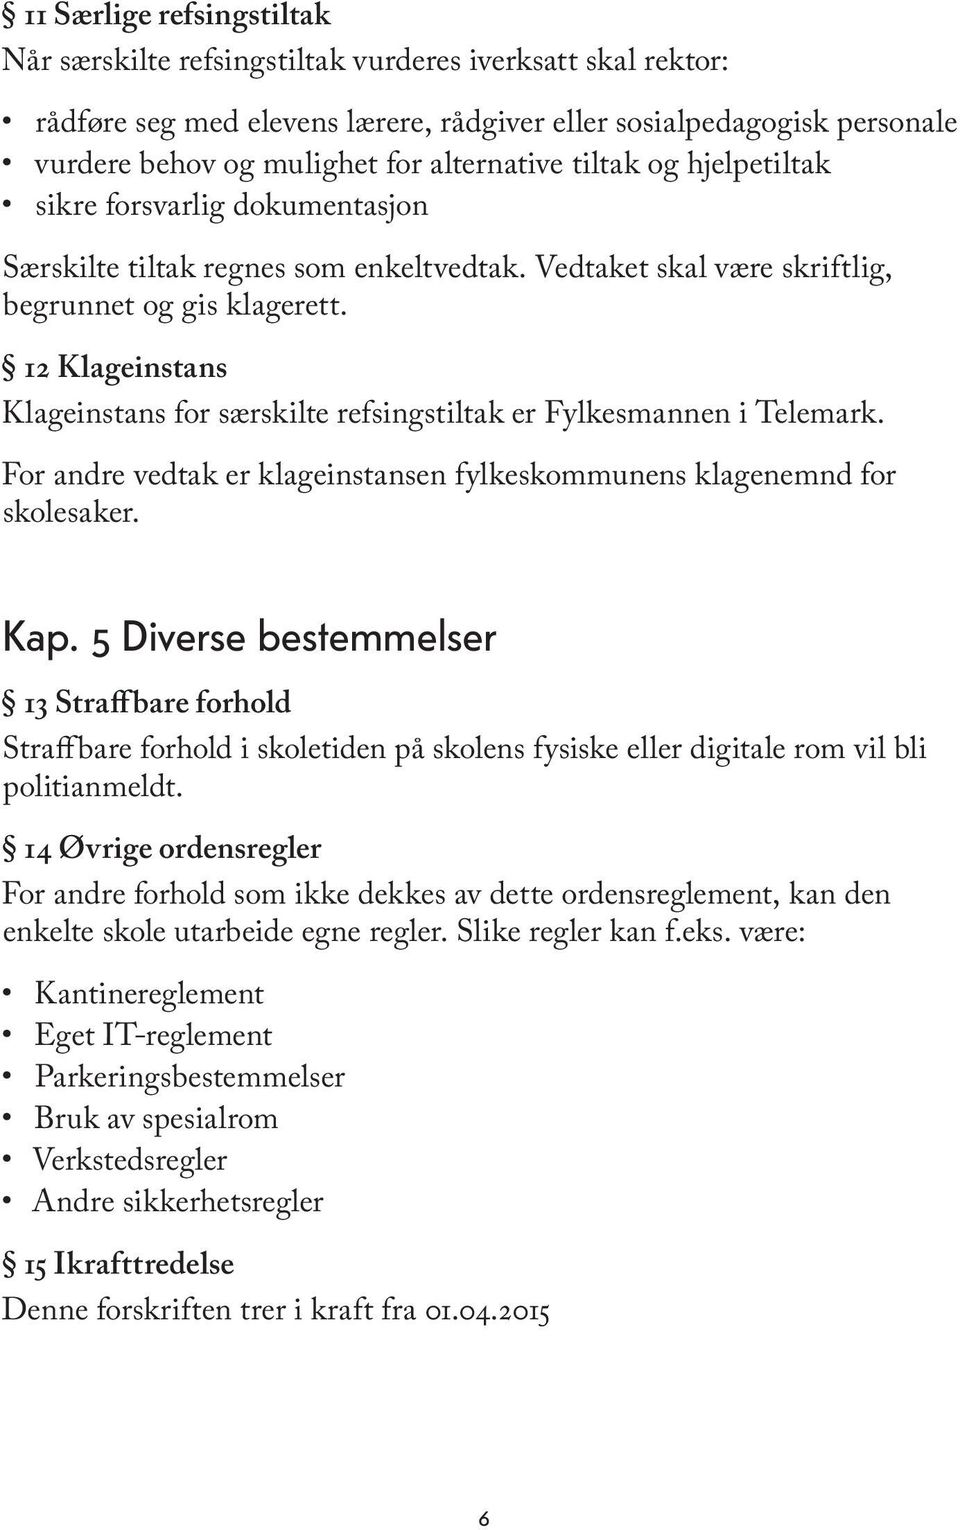 12 Klageinstans Klageinstans for særskilte refsingstiltak er Fylkesmannen i Telemark. For andre vedtak er klageinstansen fylkeskommunens klagenemnd for skolesaker. Kap.